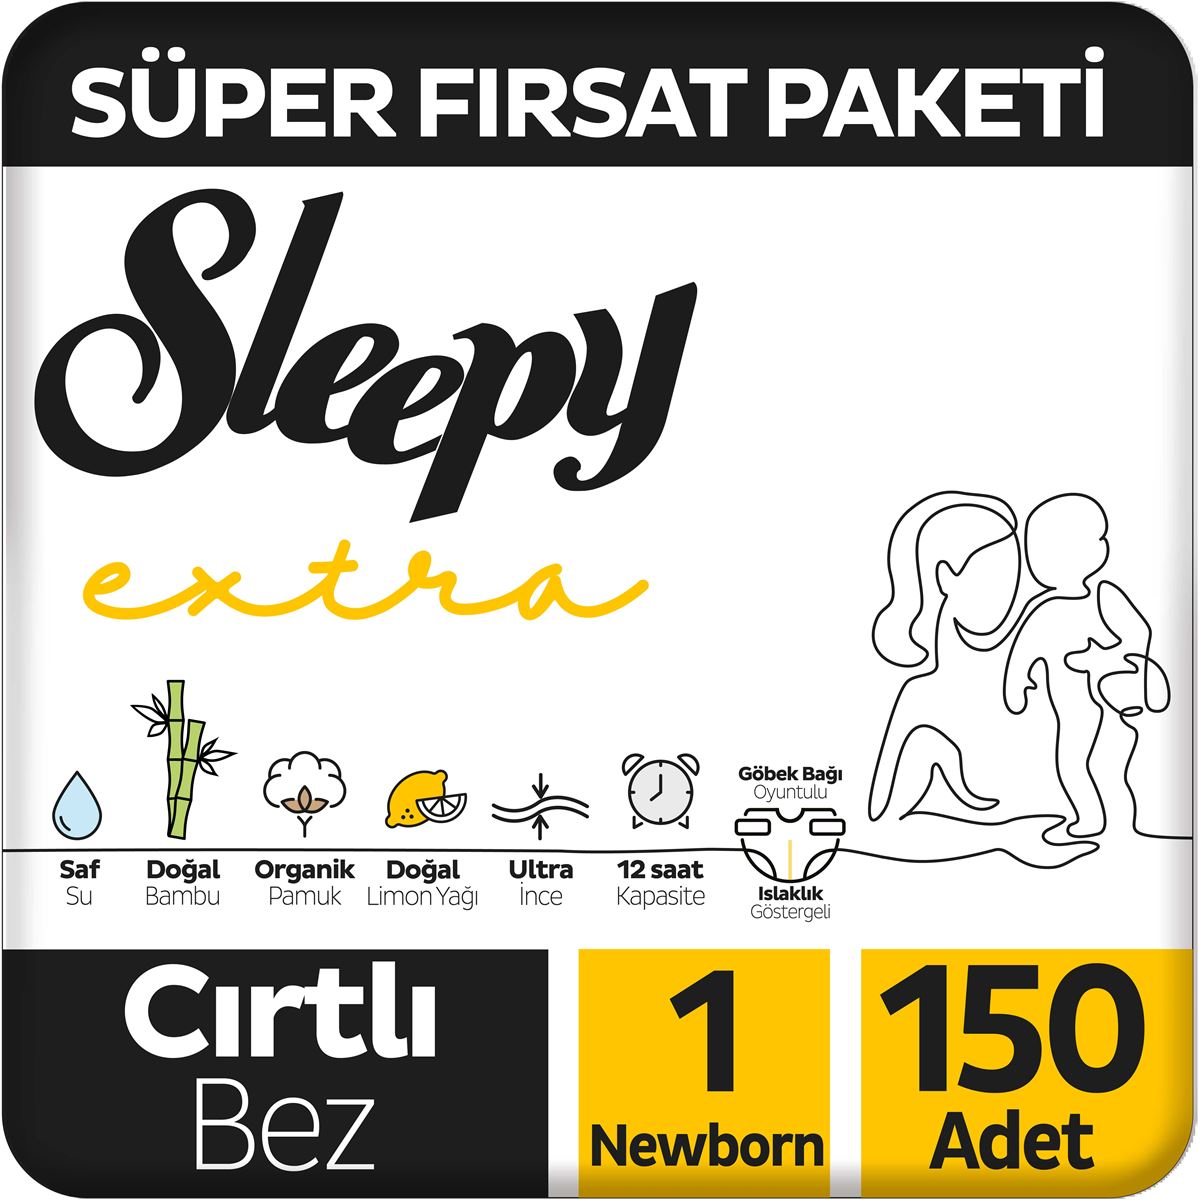 Sleepy Extra Günlük Aktivite Süper Fırsat Paketi Bebek Bezi 1 Numara Newborn 150 Adet